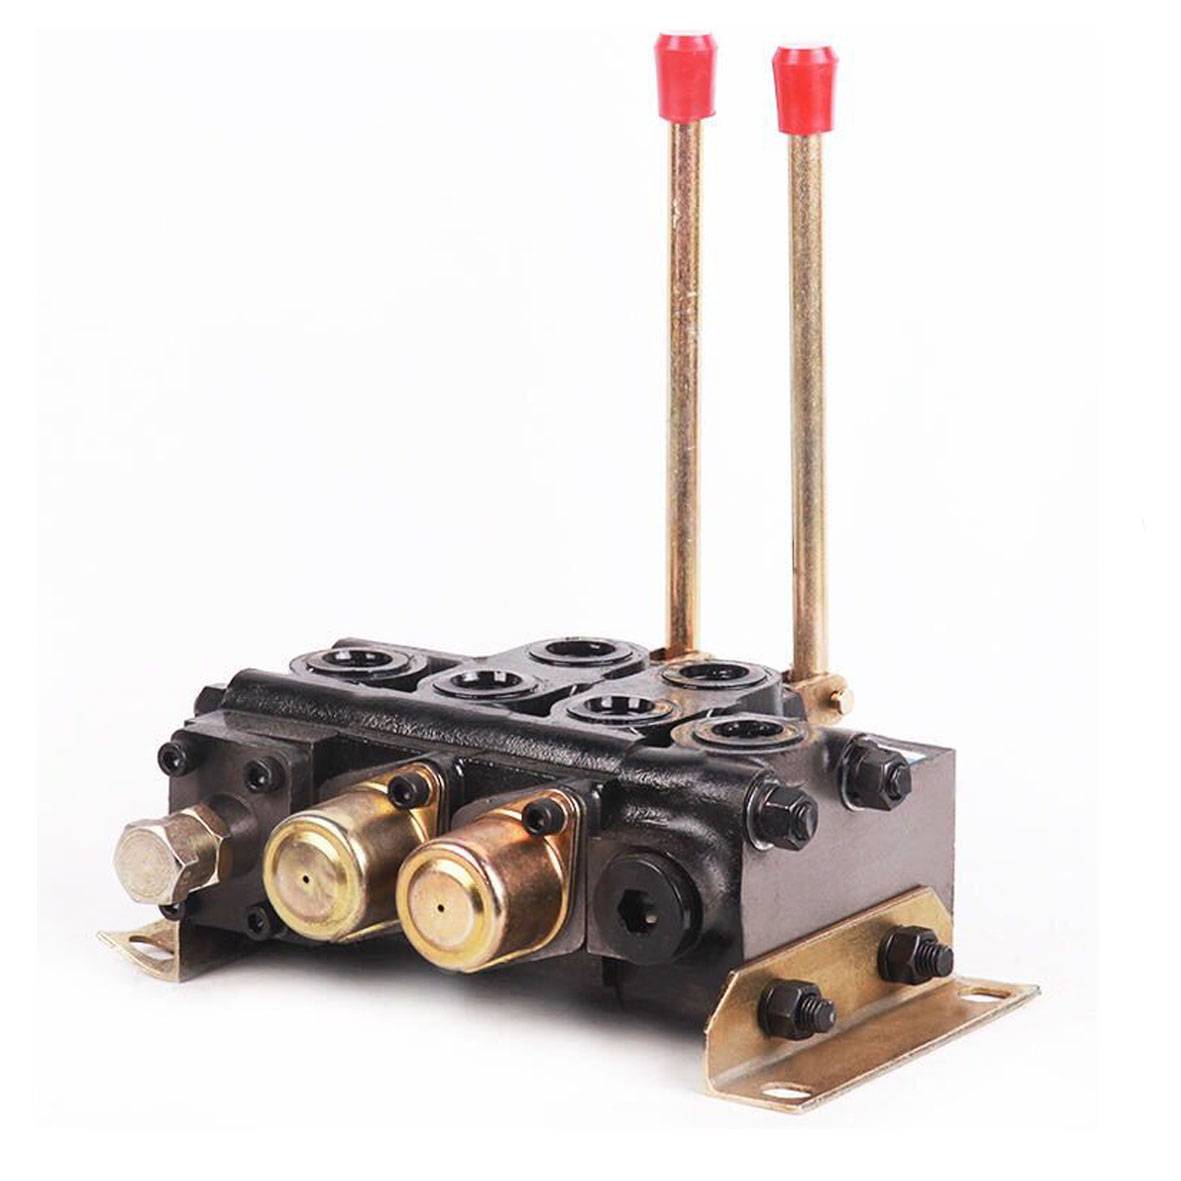 ZS 20 Series multi-way reversing valves